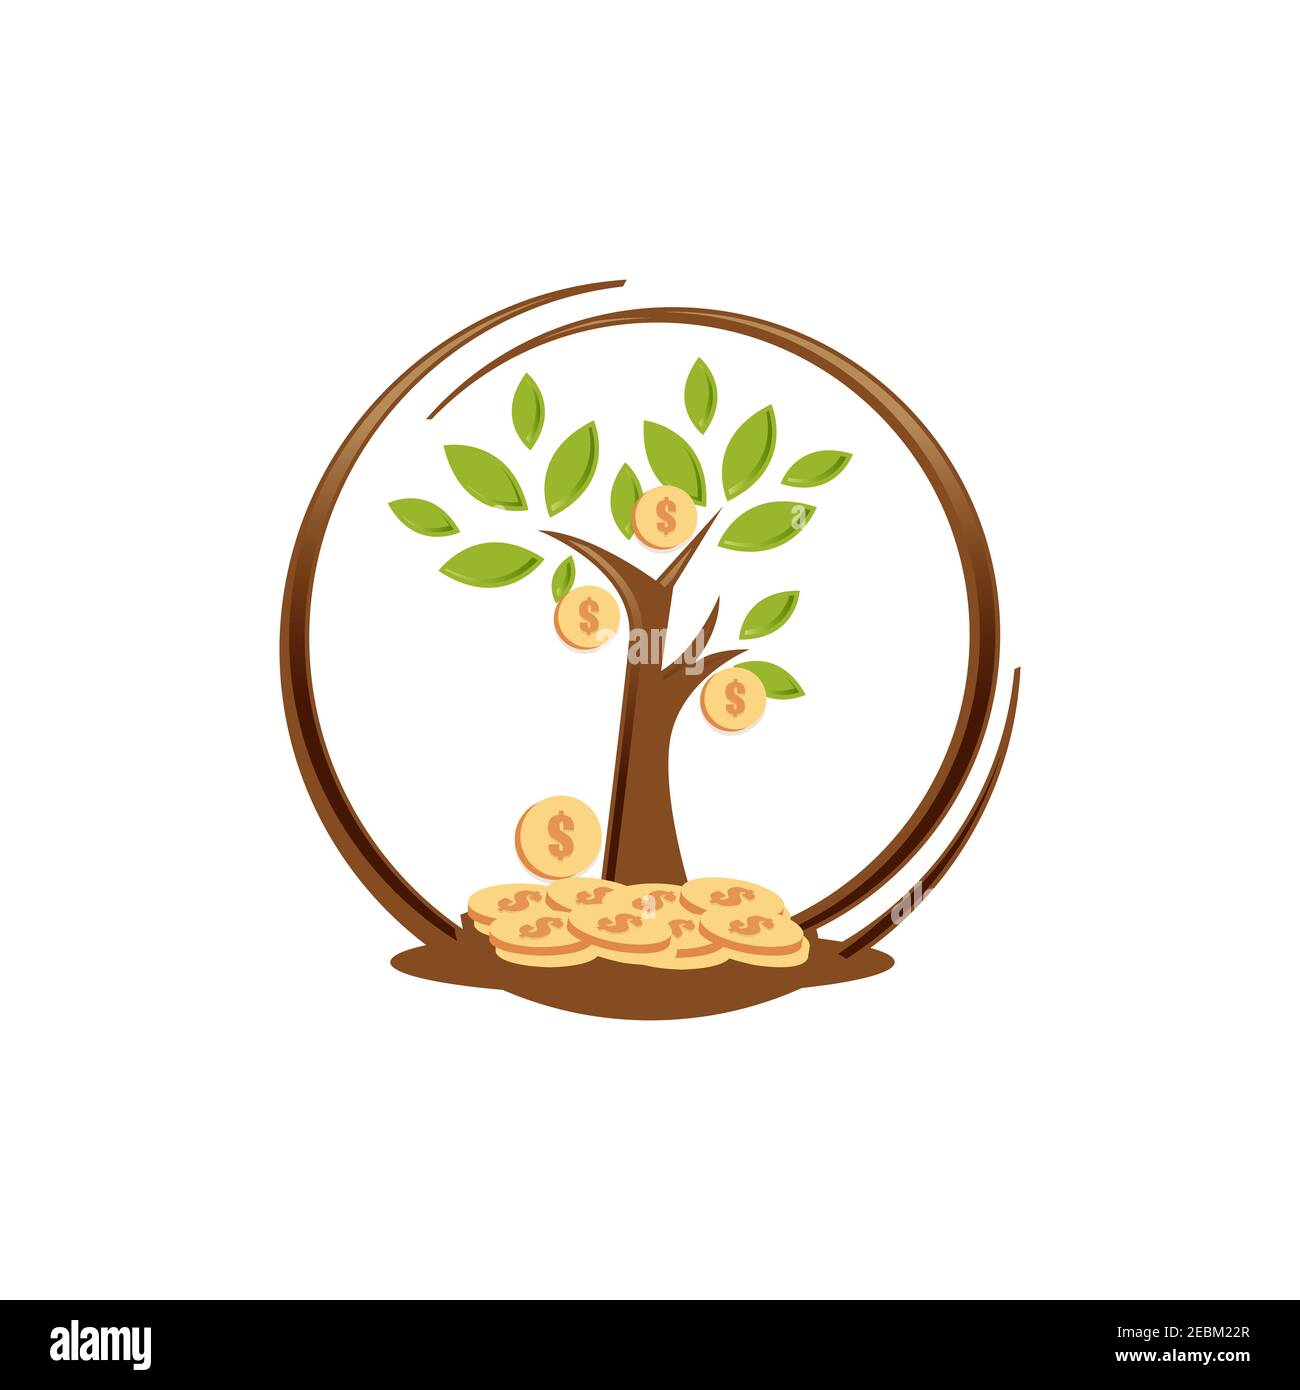 Illustration de la conception de l'arbre de l'argent avec un arrière-plan blanc isolé. Conception plate de l'arbre de l'argent. Illustration vectorielle EPS.8 EPS.10 Illustration de Vecteur